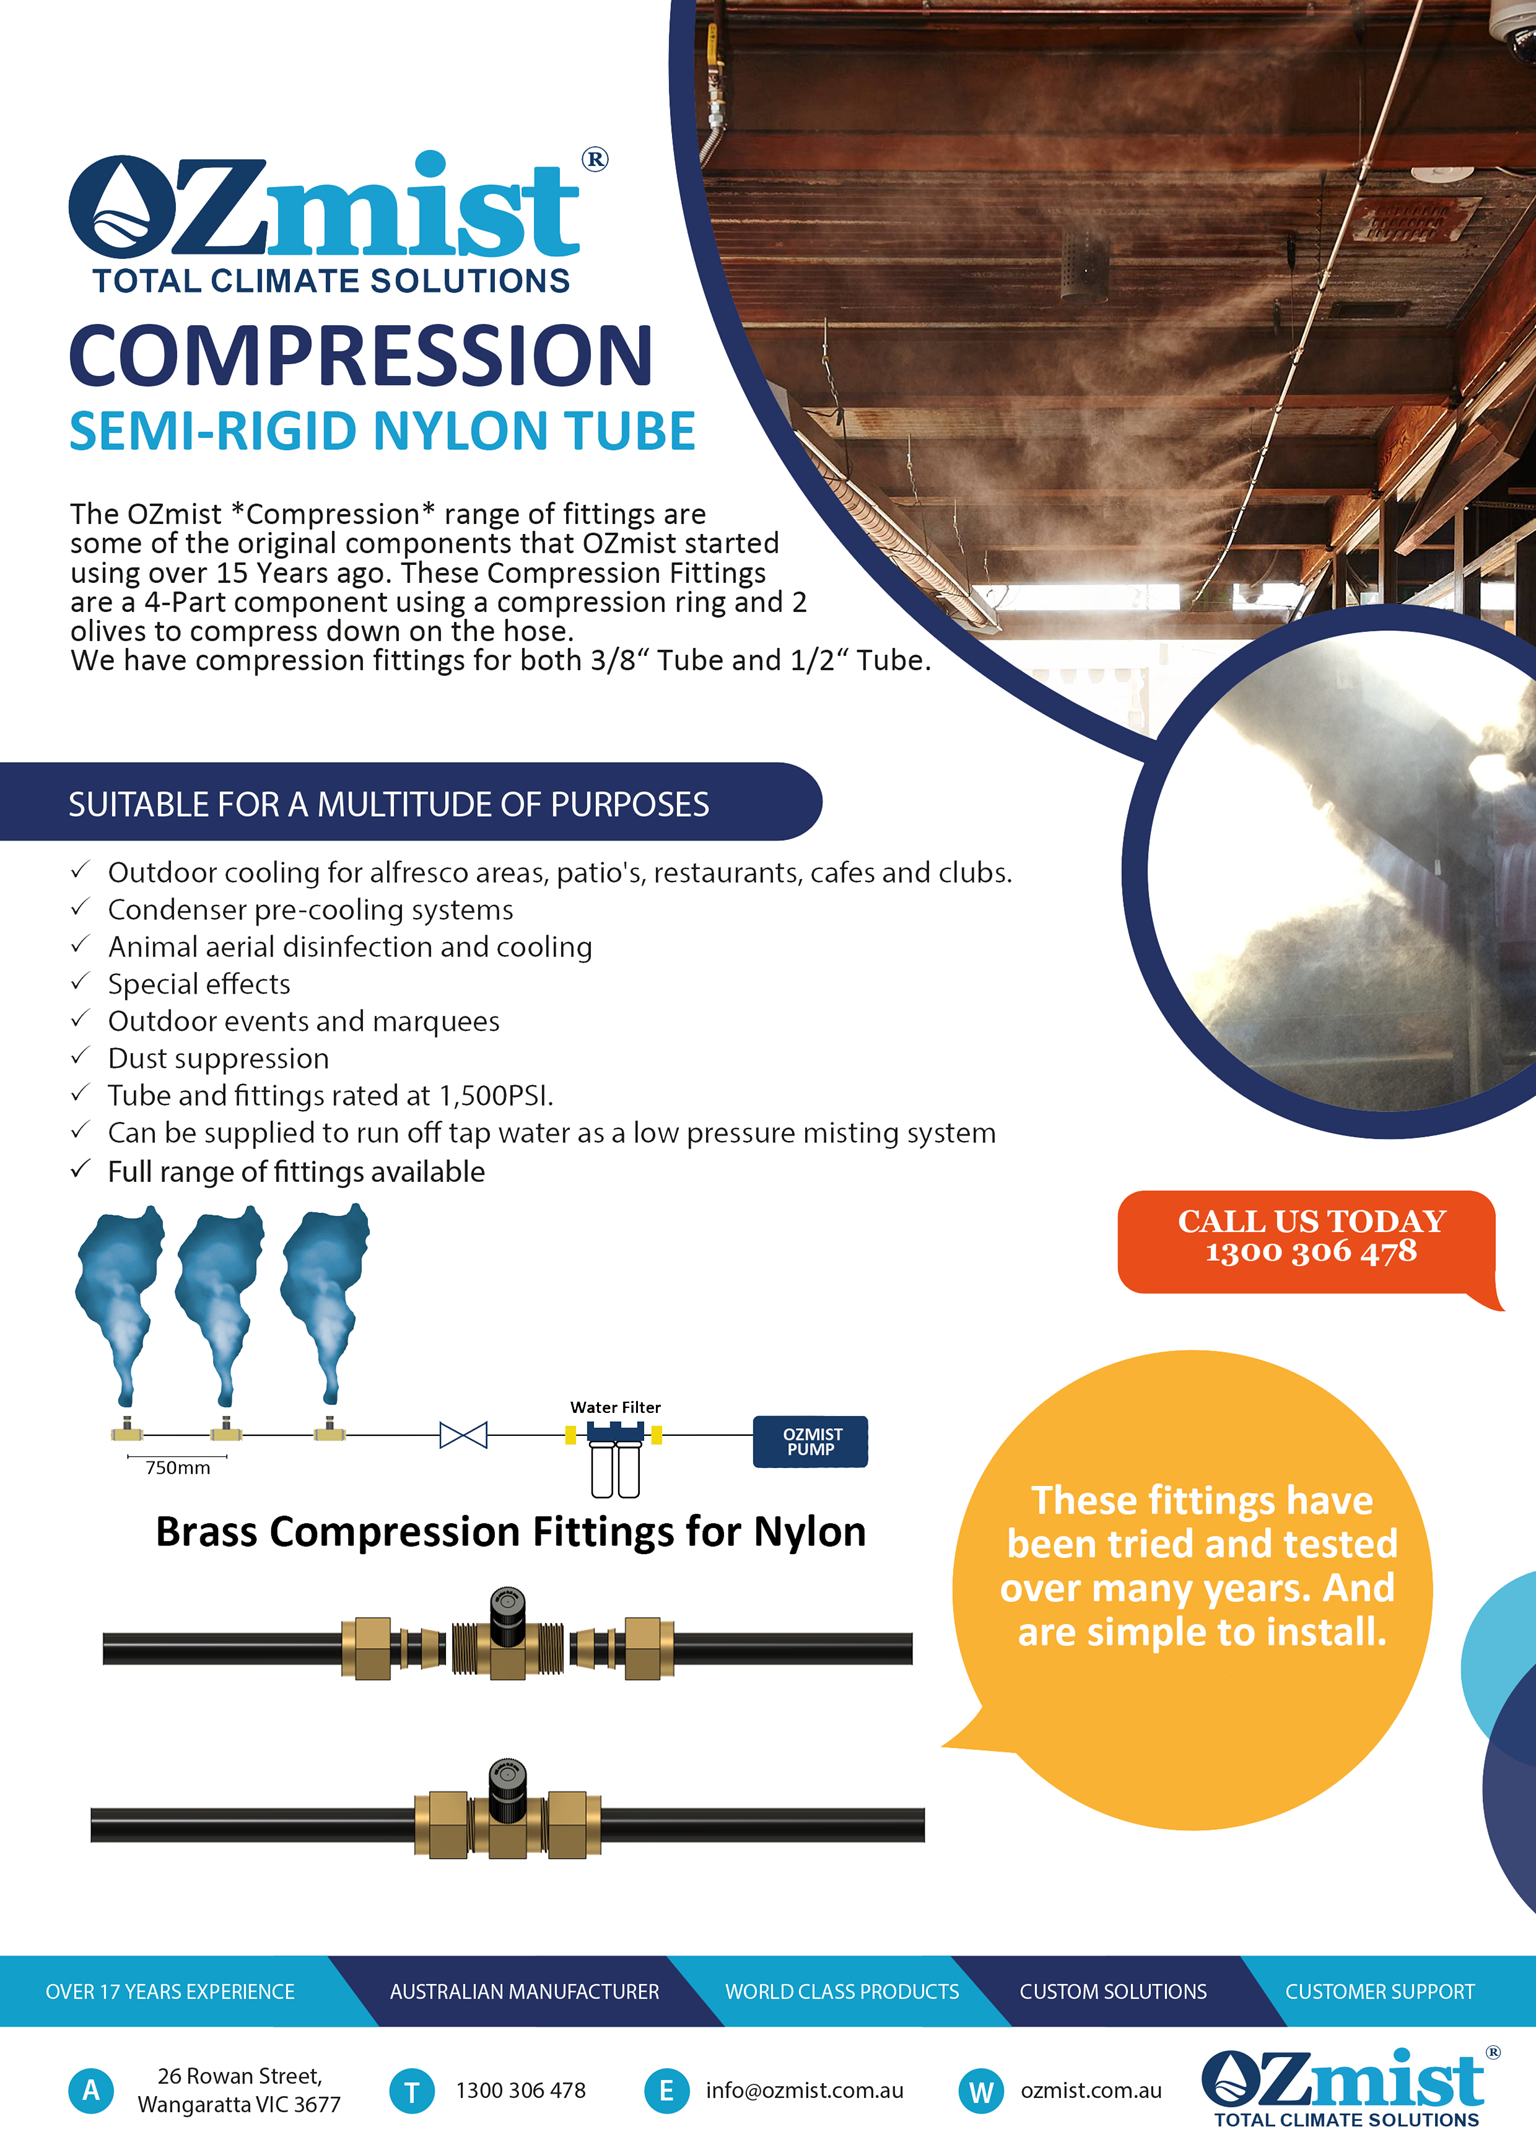 OZmist Compression for Semi-Rigid Nylon Tube